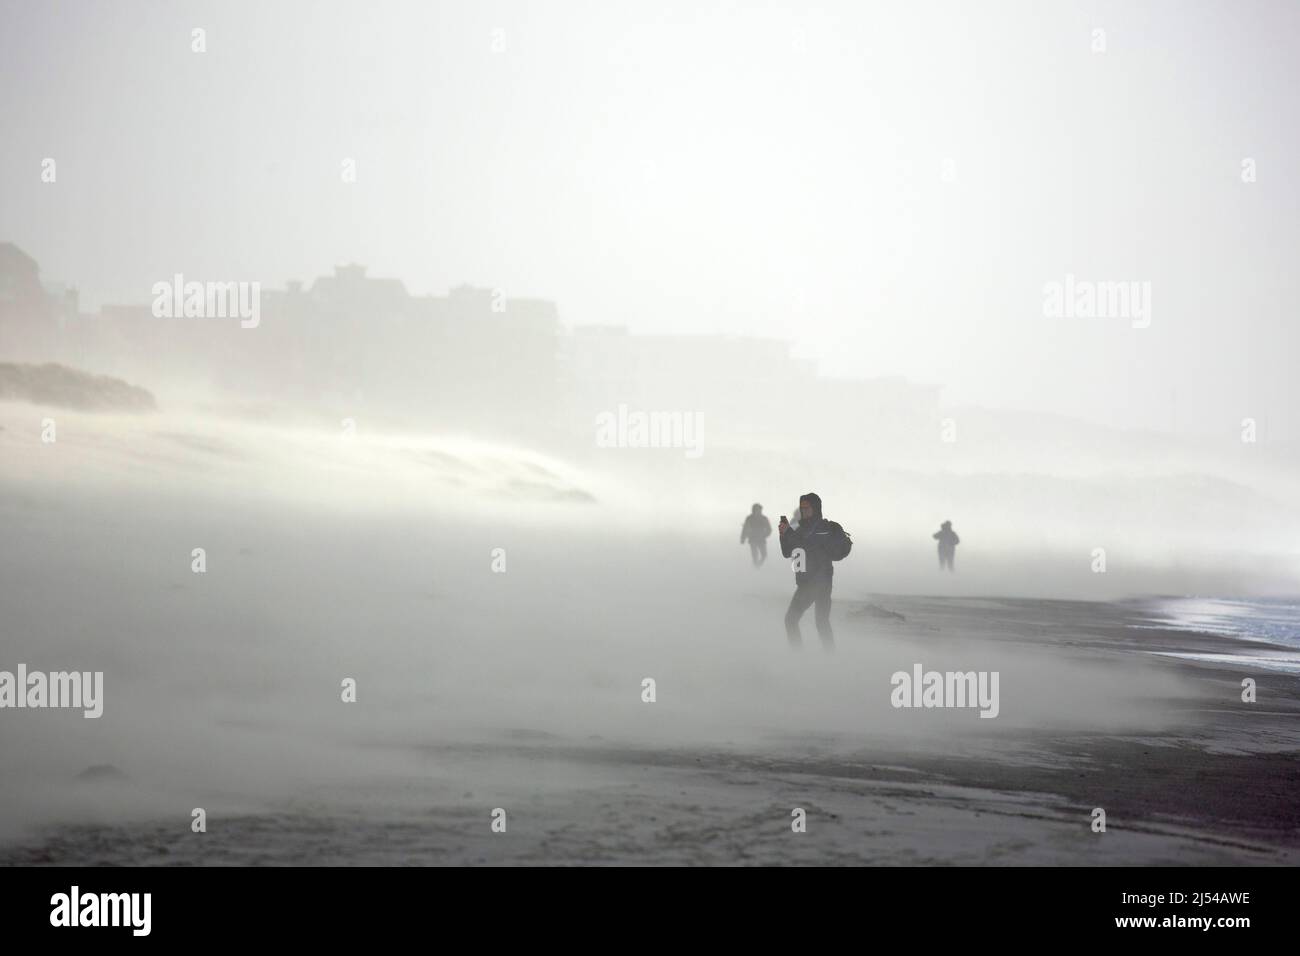 walkers in the storm on the sandy beach, Hurricane Eunice, Zeynep, 02/18/2022, Belgium, West Flanders, Nieuwpoort Stock Photo